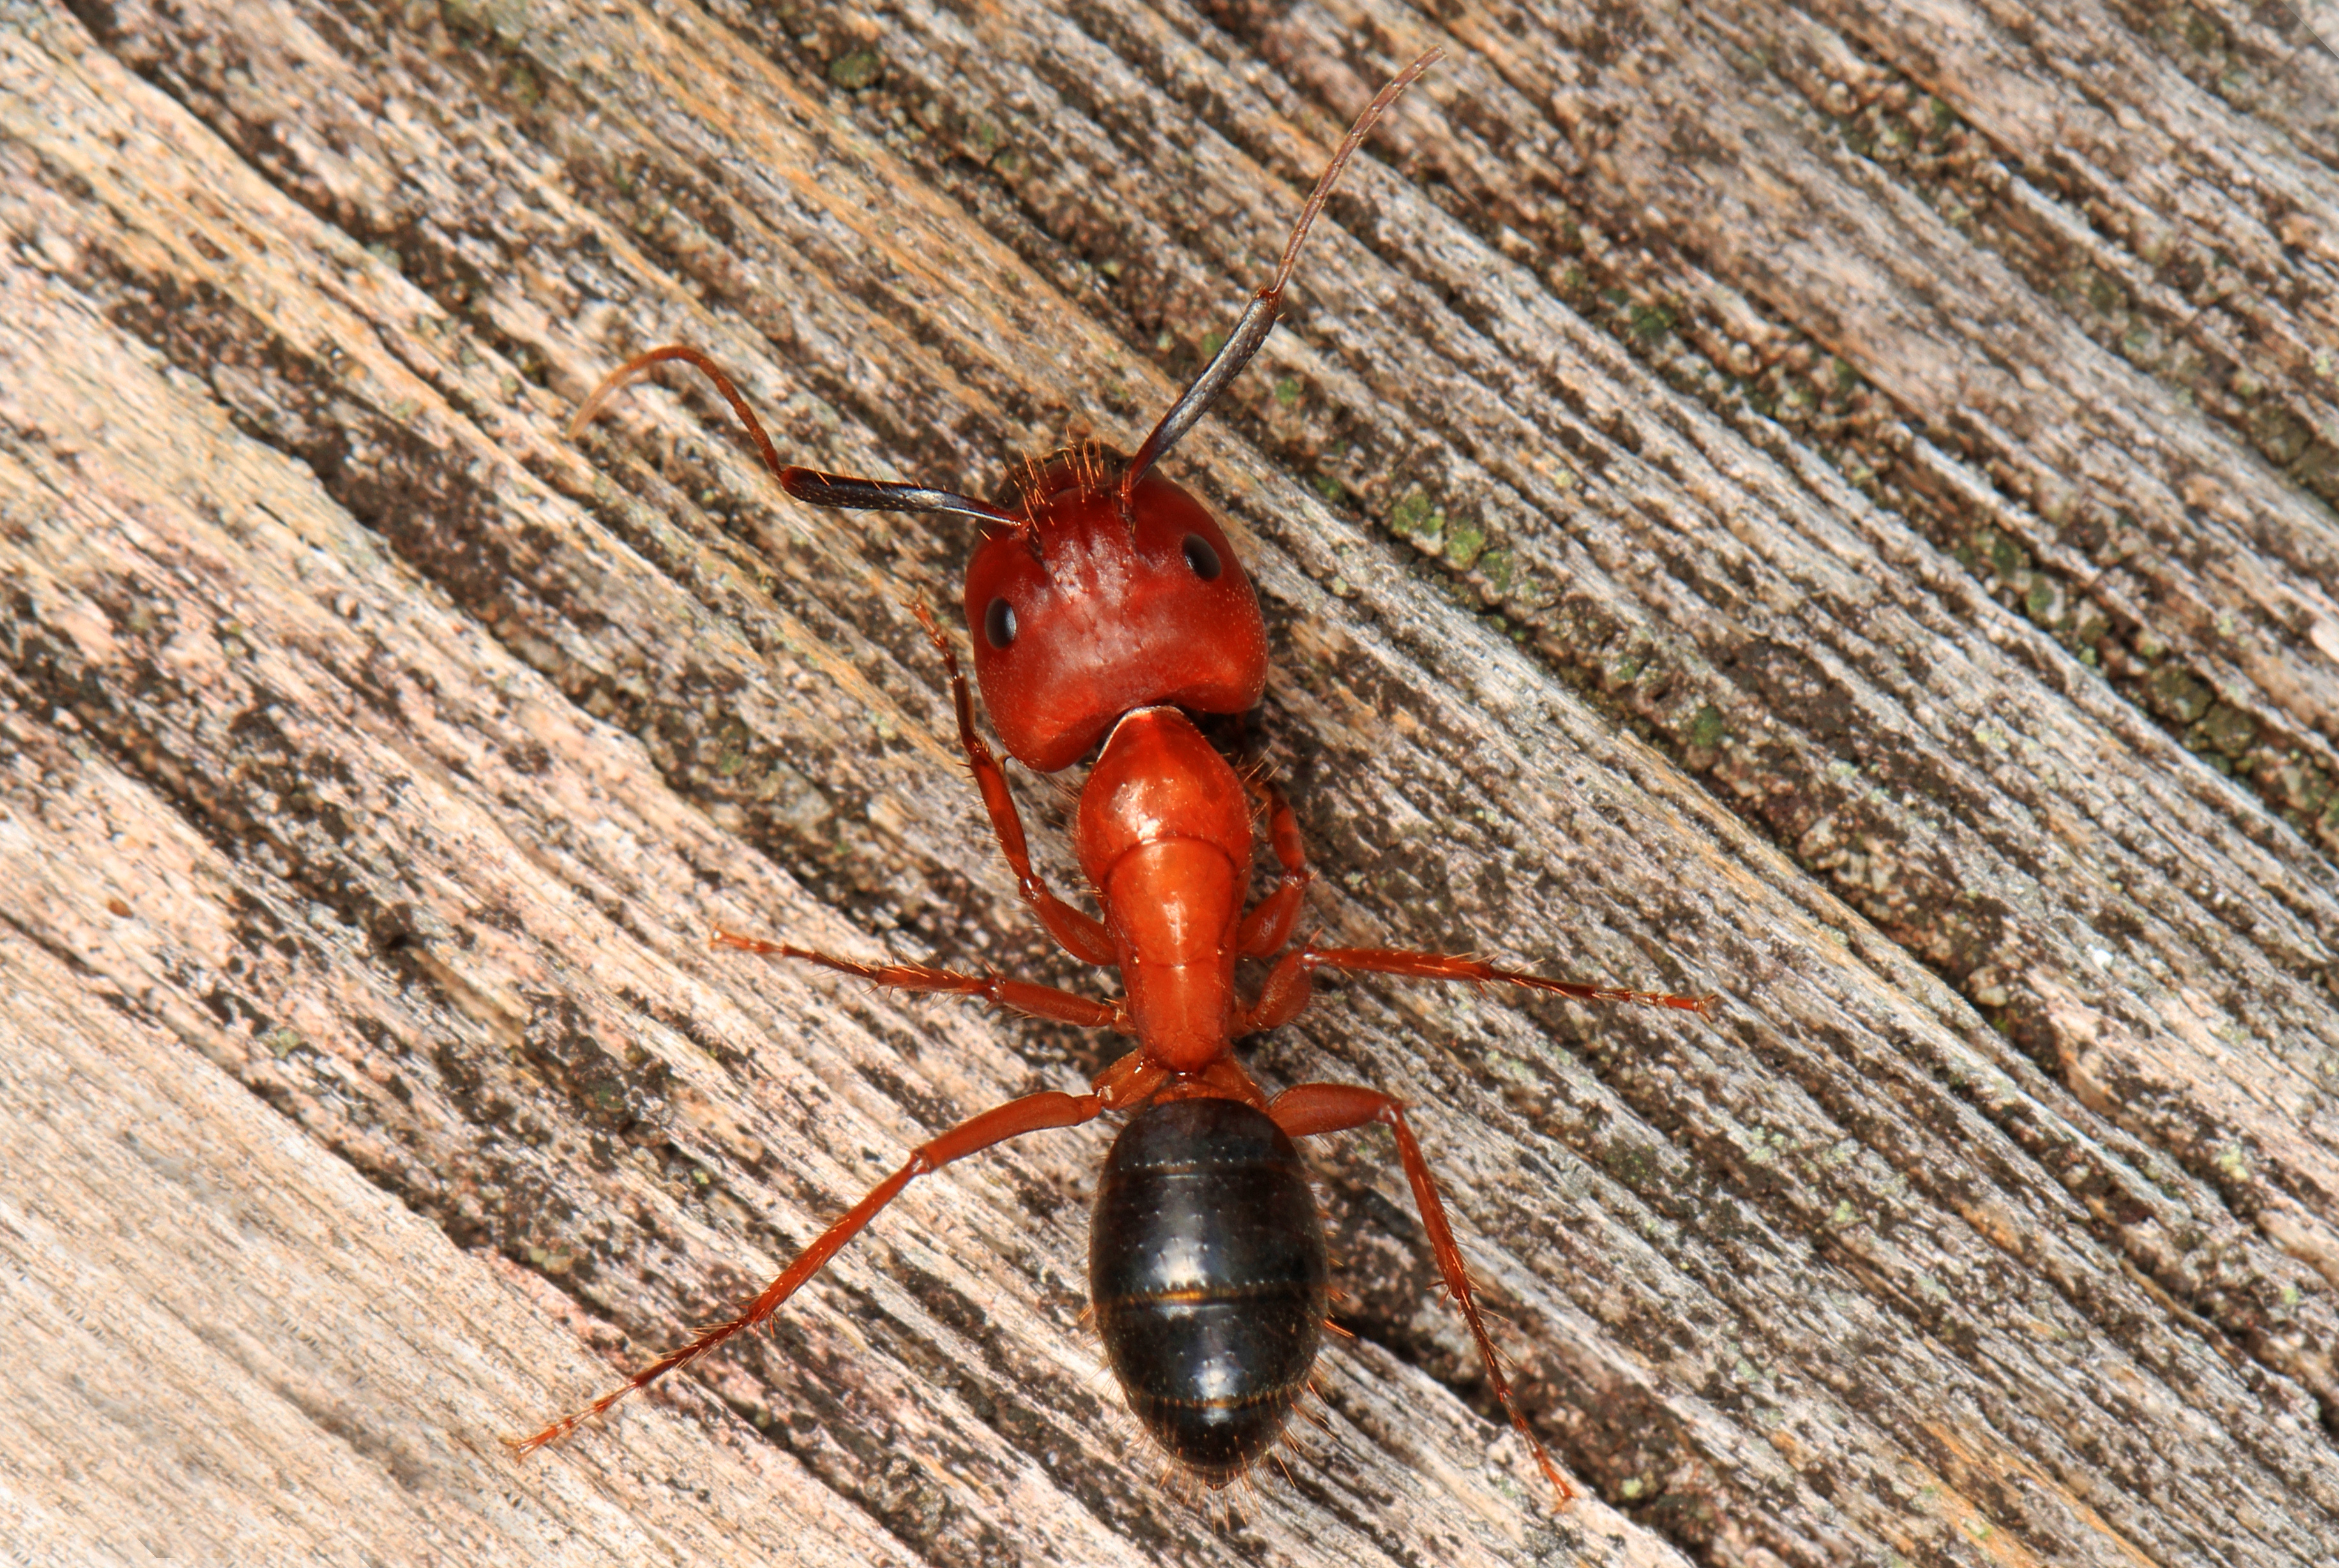 Florida Carpenter Ant - Camponotus atriceps, Everglades National Park, Homestead, Florida